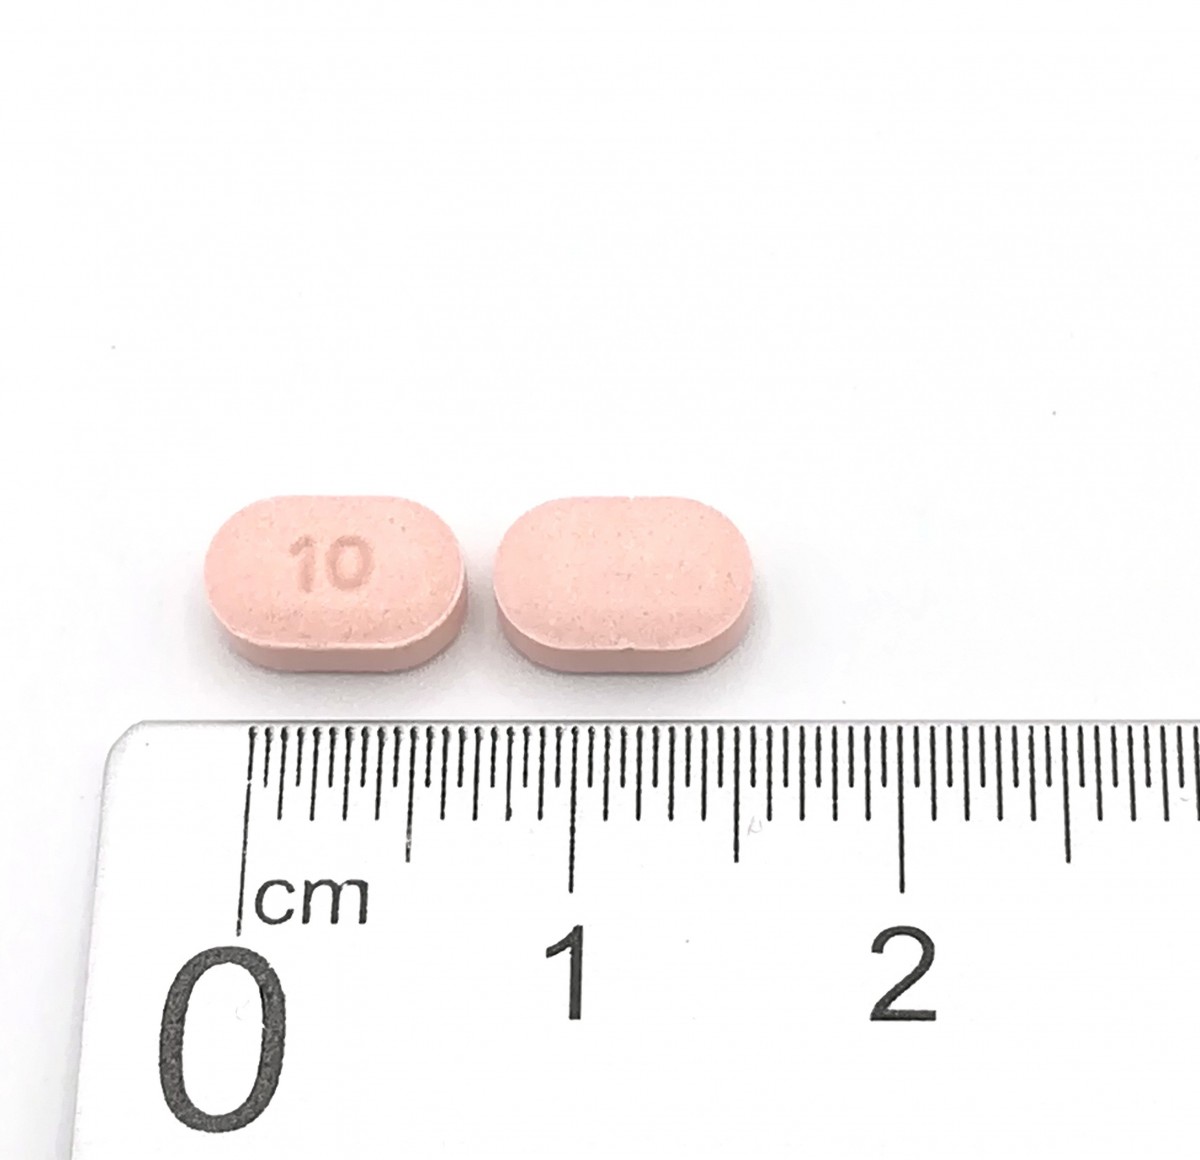 ARIPIPRAZOL NORMON 10 MG COMPRIMIDOS EFG , 28 comprimidos fotografía de la forma farmacéutica.